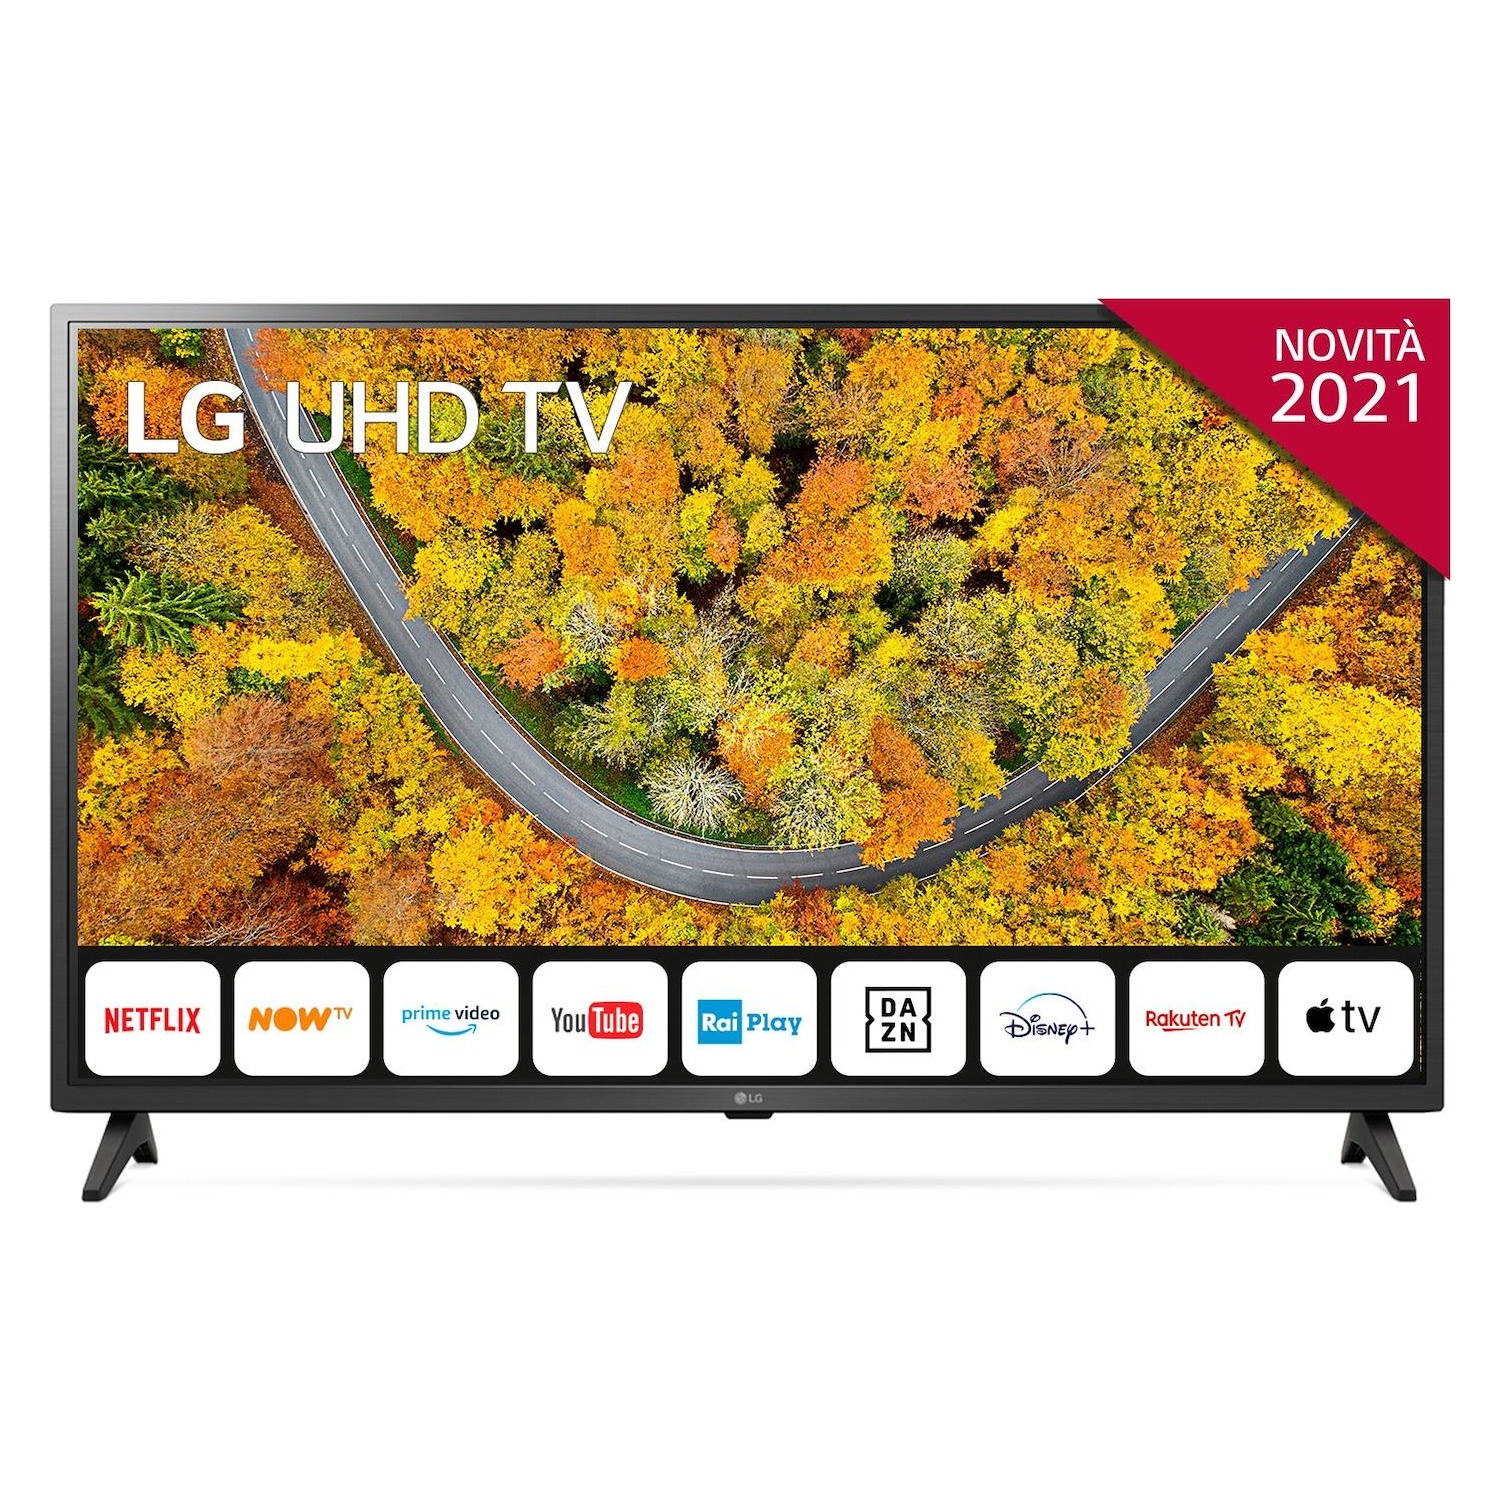 Immagine per TV LED LG 43UP75006 Calibrato 4K e FULL HD da DIMOStore